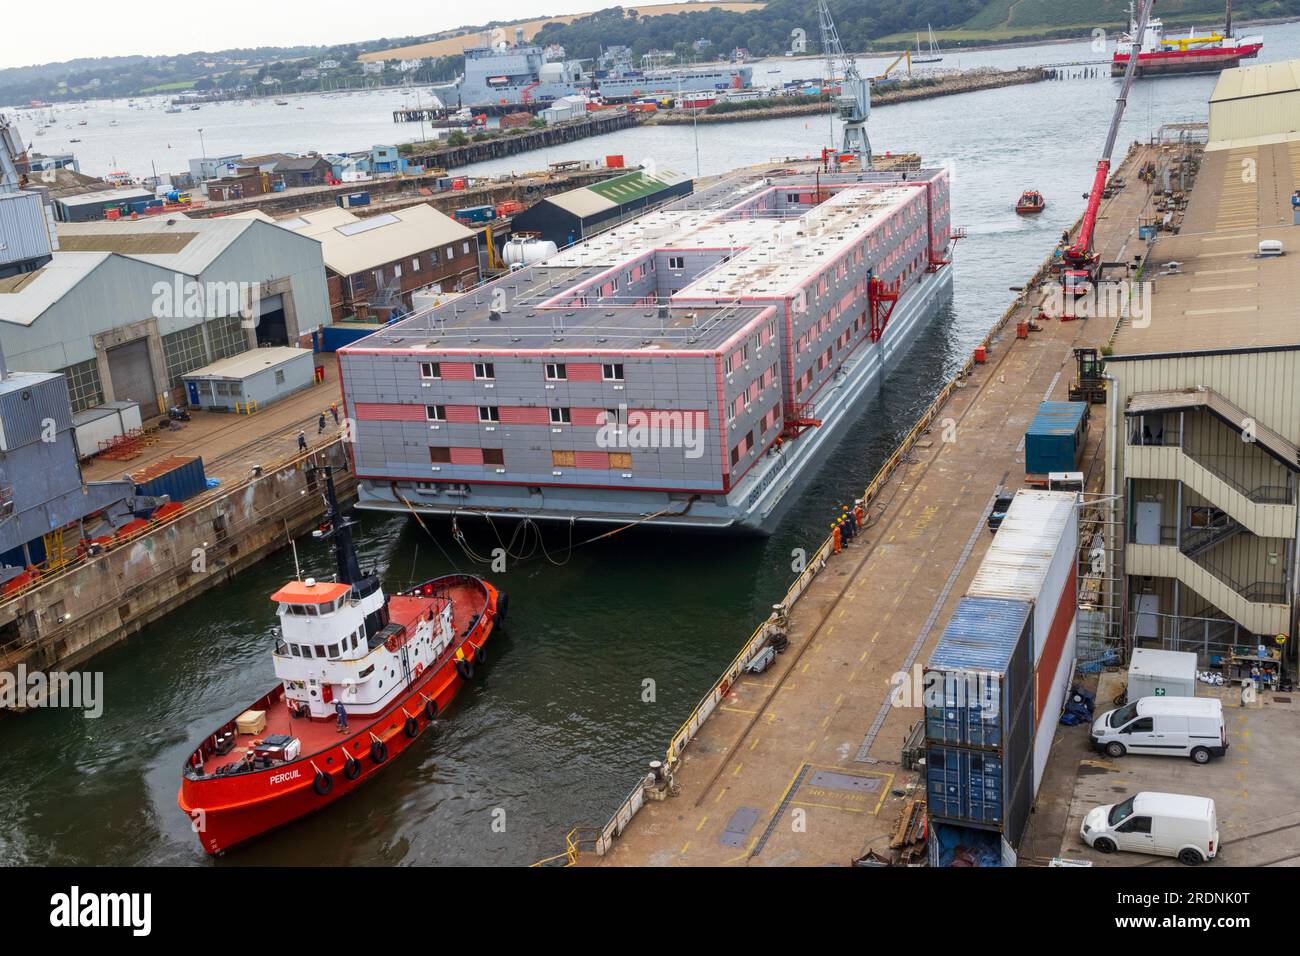 Bibby Stockholm quitte Falmouth Docks pour Portland prêt à accueillir 500 réfugiés Banque D'Images